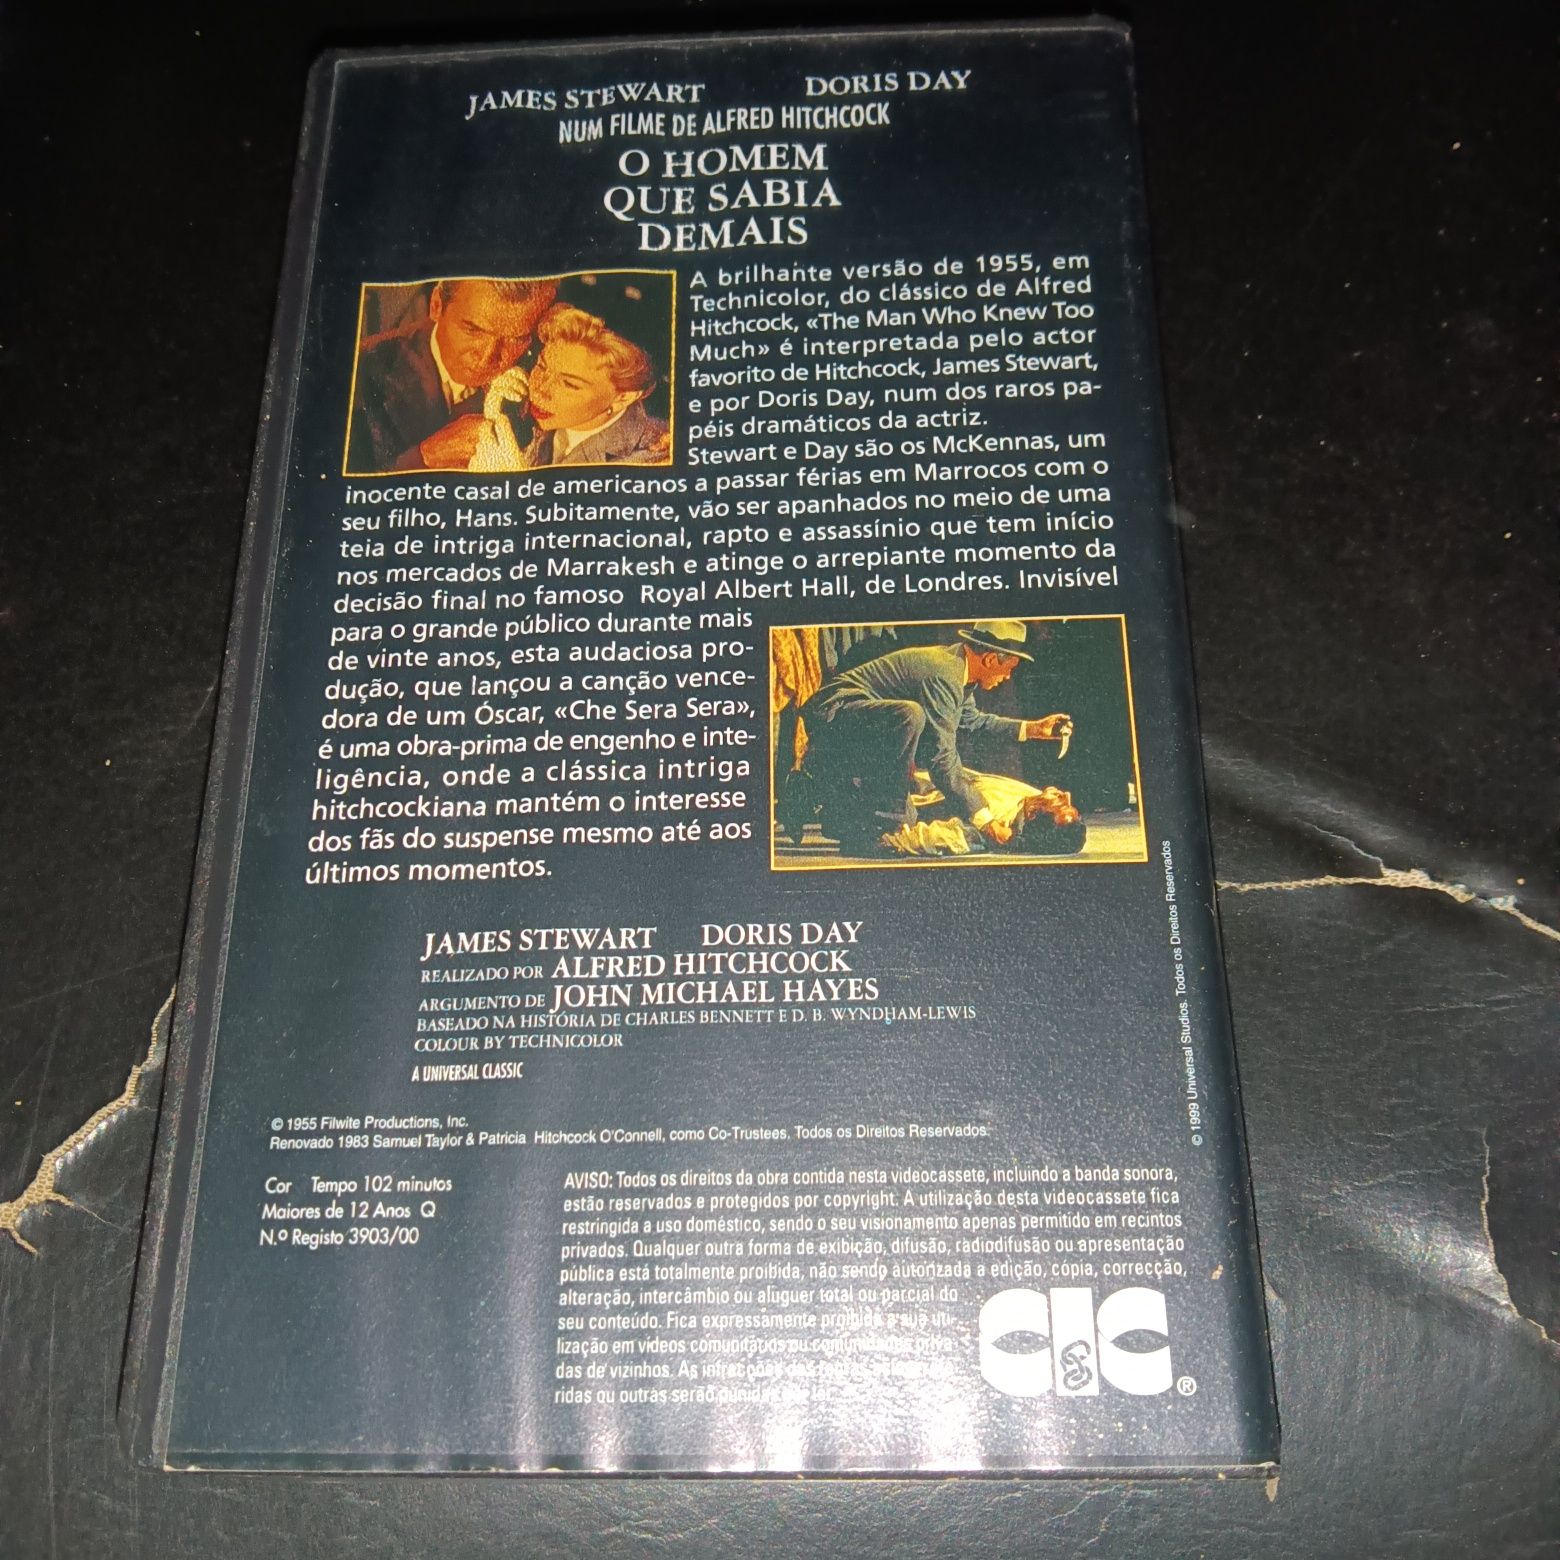 Colecção de 5 VHS HITCHCOCK K7 VIDEO